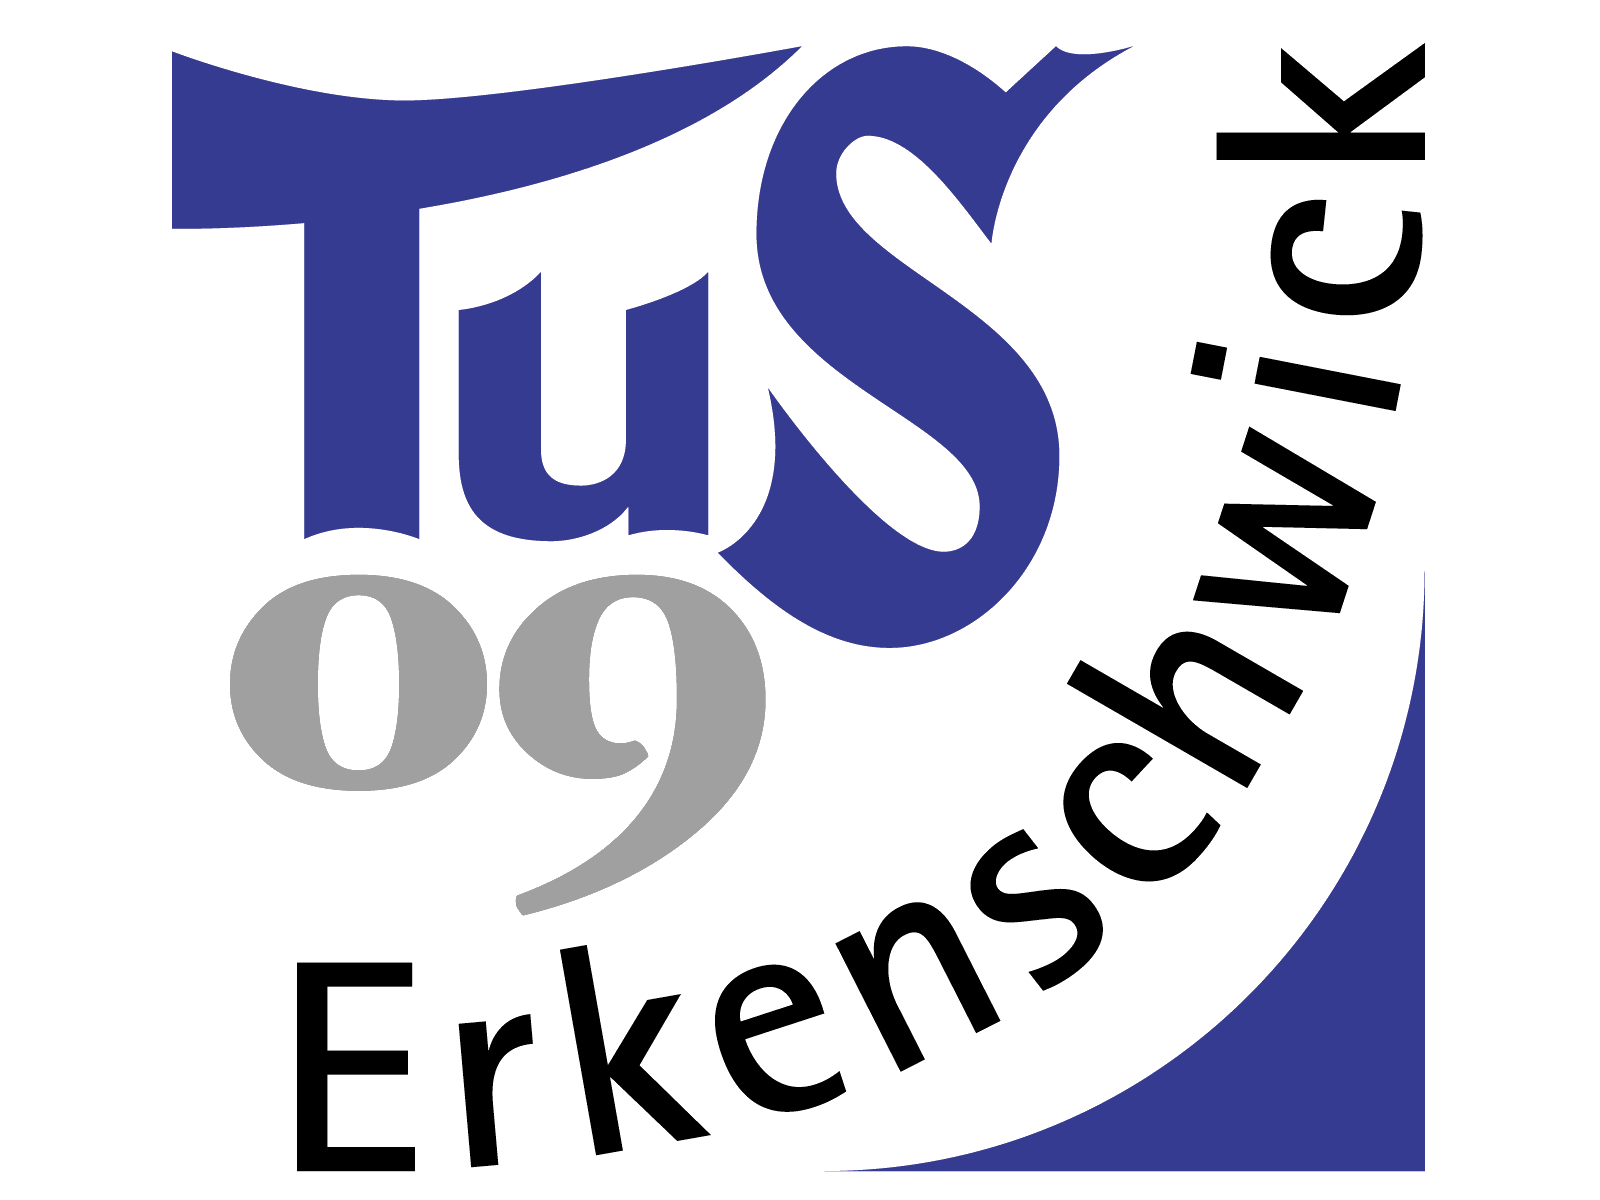 TuS 09 Erkenschwick